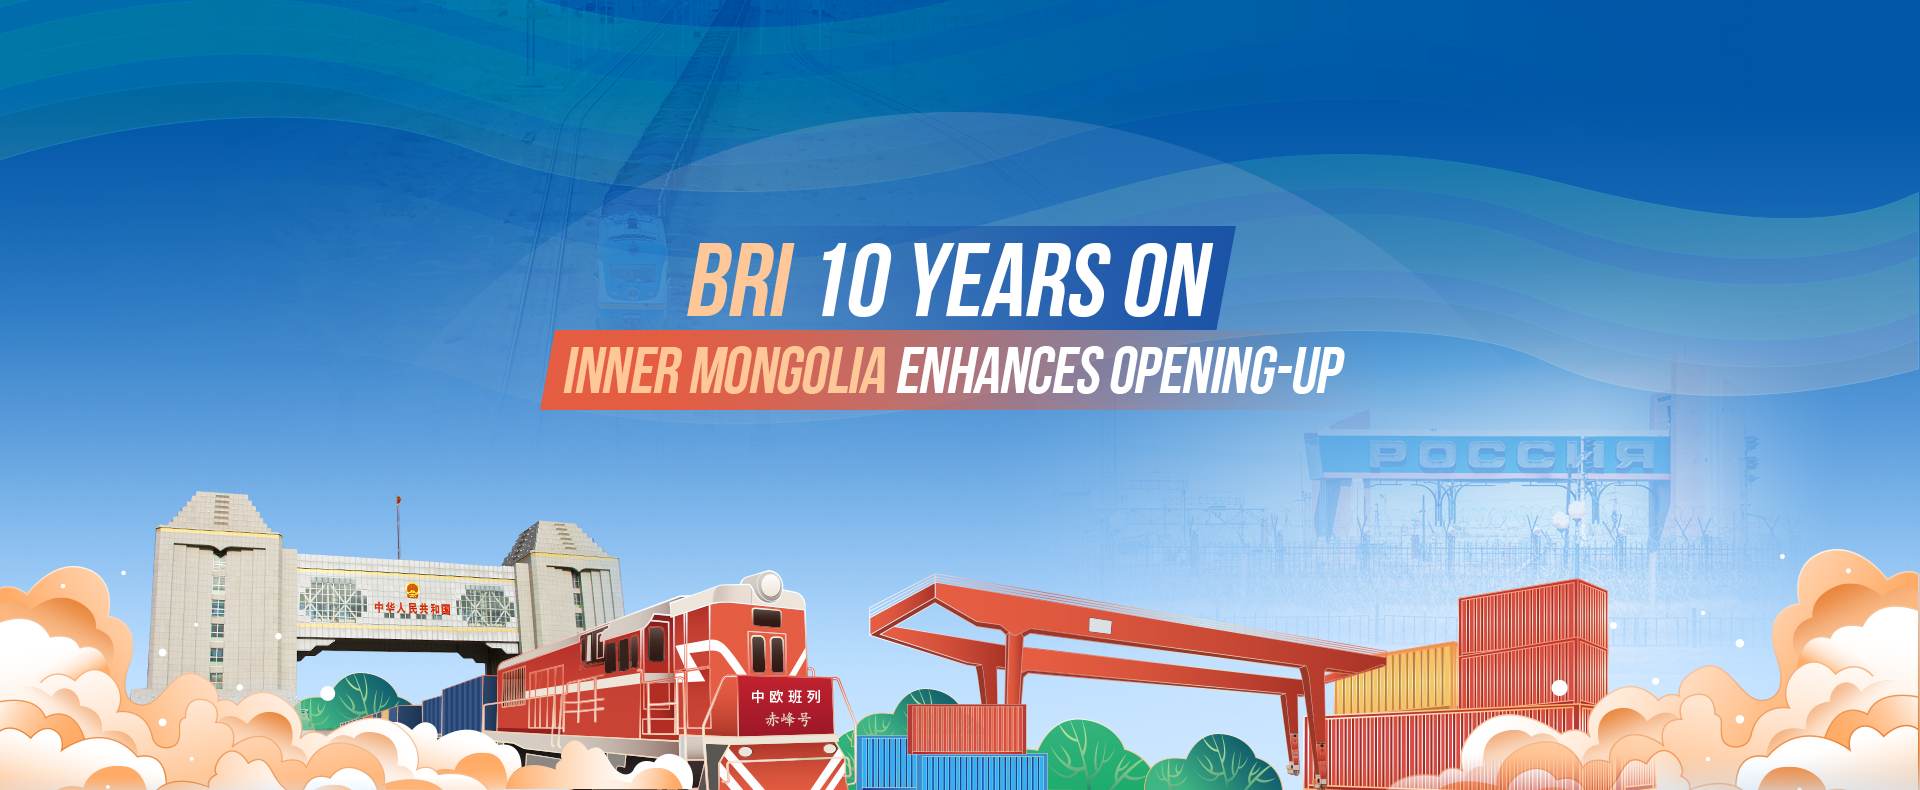 Inner Mongolia enhances opening-up